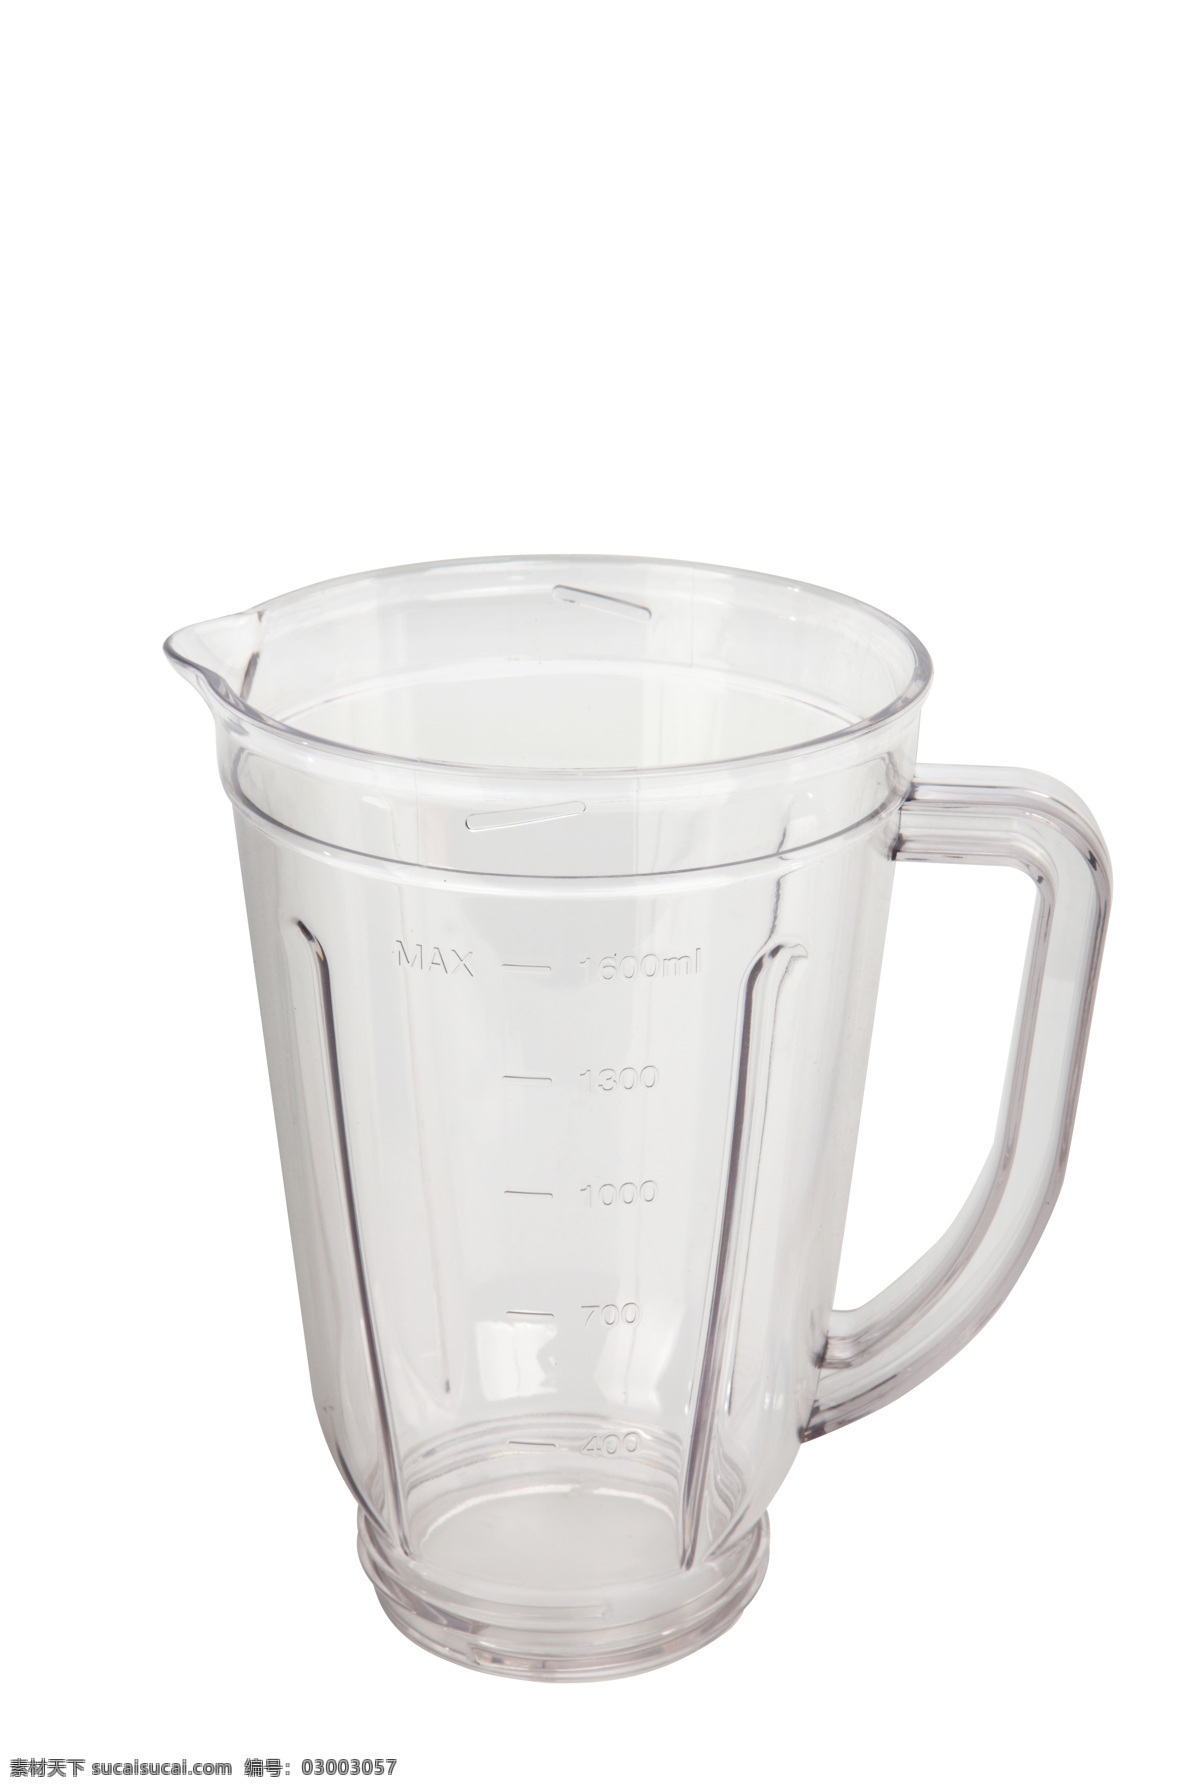 量杯 榨汁杯 杯子 透明玻璃杯 口杯 杯